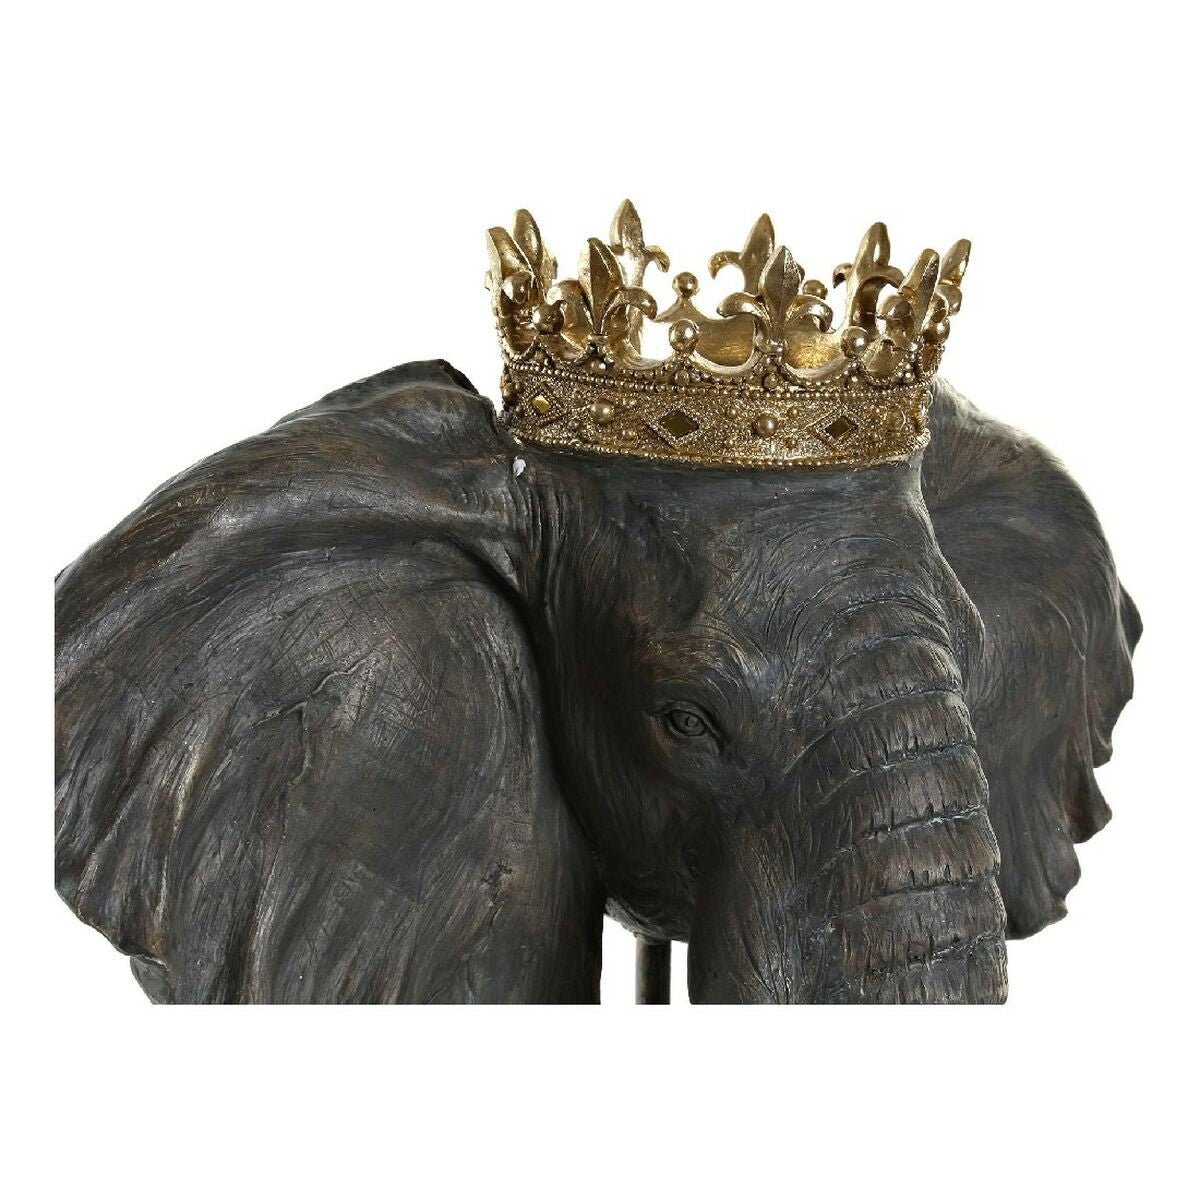 Kralj crnog slona 49 x 26,5 x 57 cm)